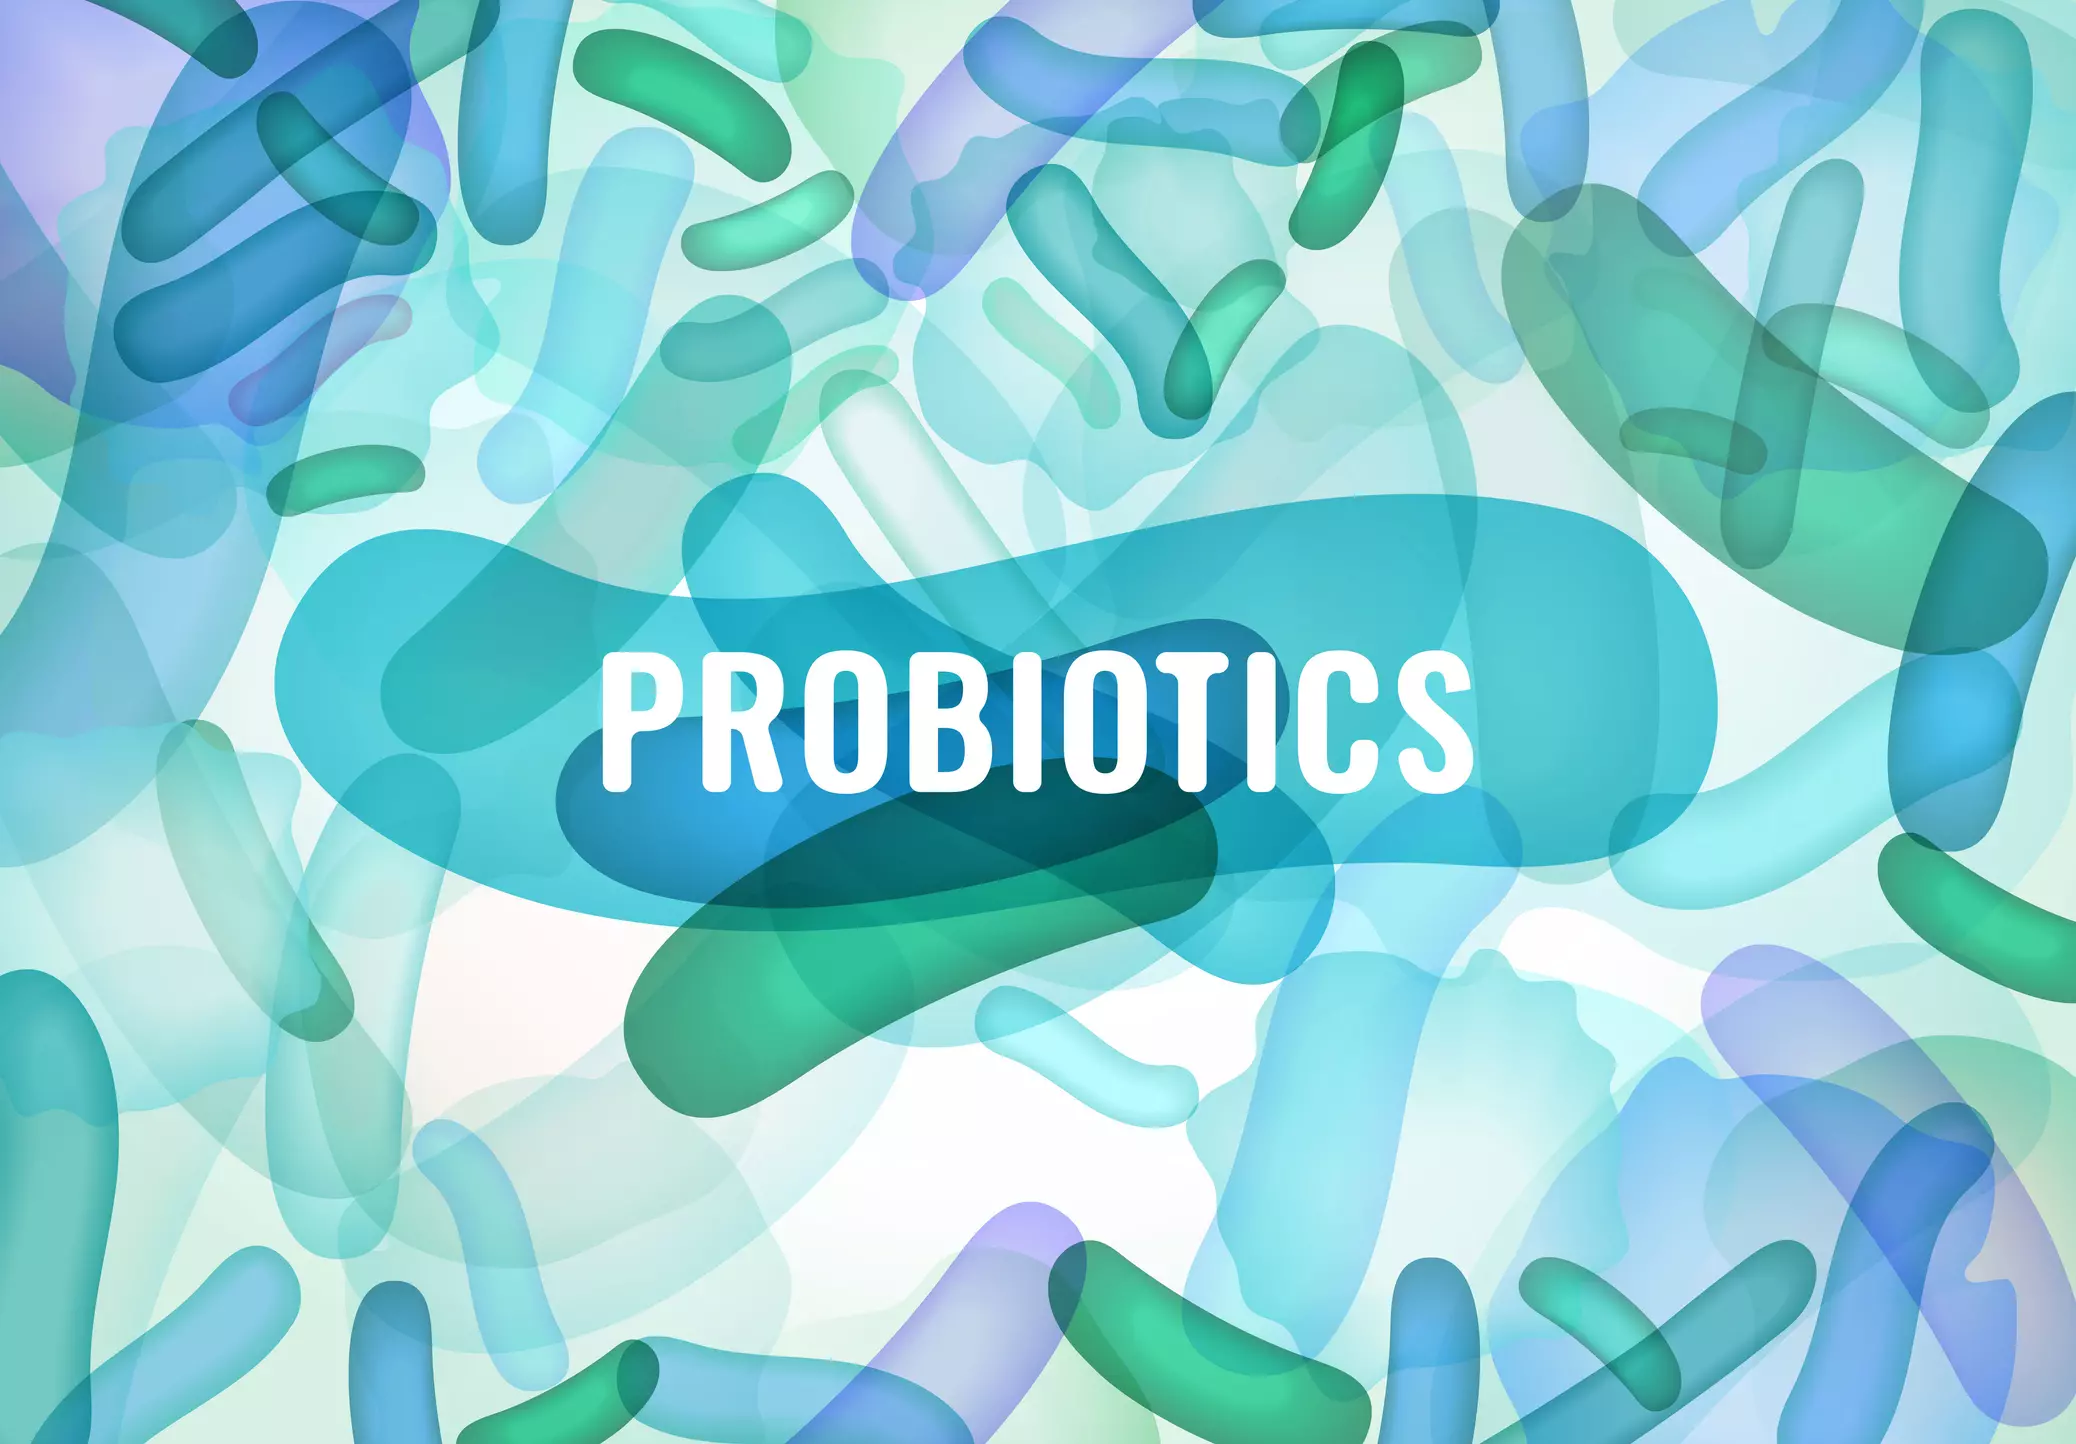 probiotic-cua-bacillus-subtilis-da-duoc-nghien-cuu-va-chung-minh-co-tac-dung-trong-viec-dieu-tri-ho-tro-chung-tao-bon-o-tre.webp